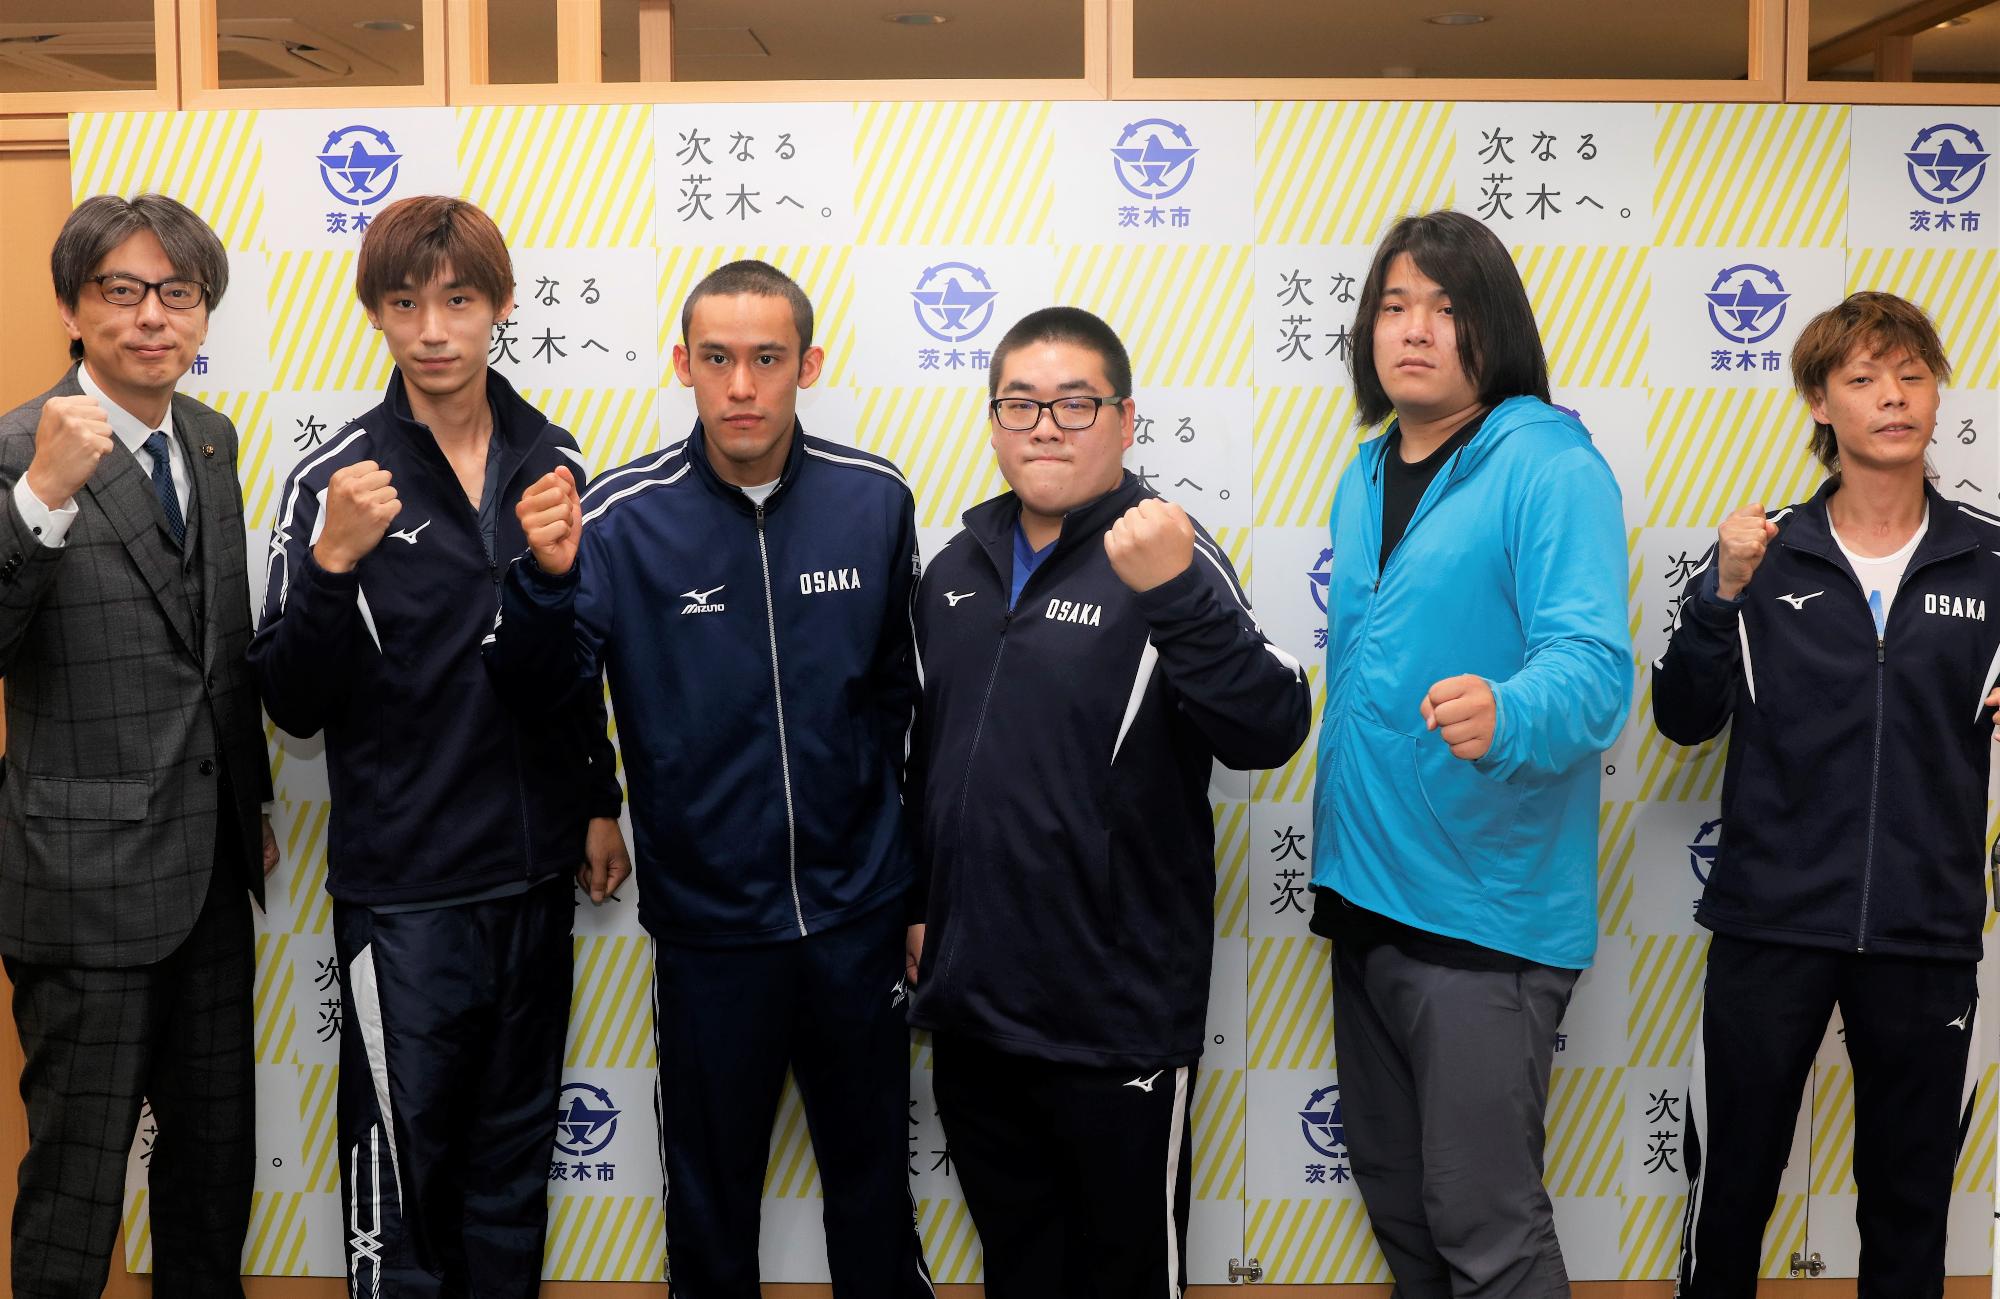 ガッツポーズをする、大阪府代表選手の皆さんと市長の写真